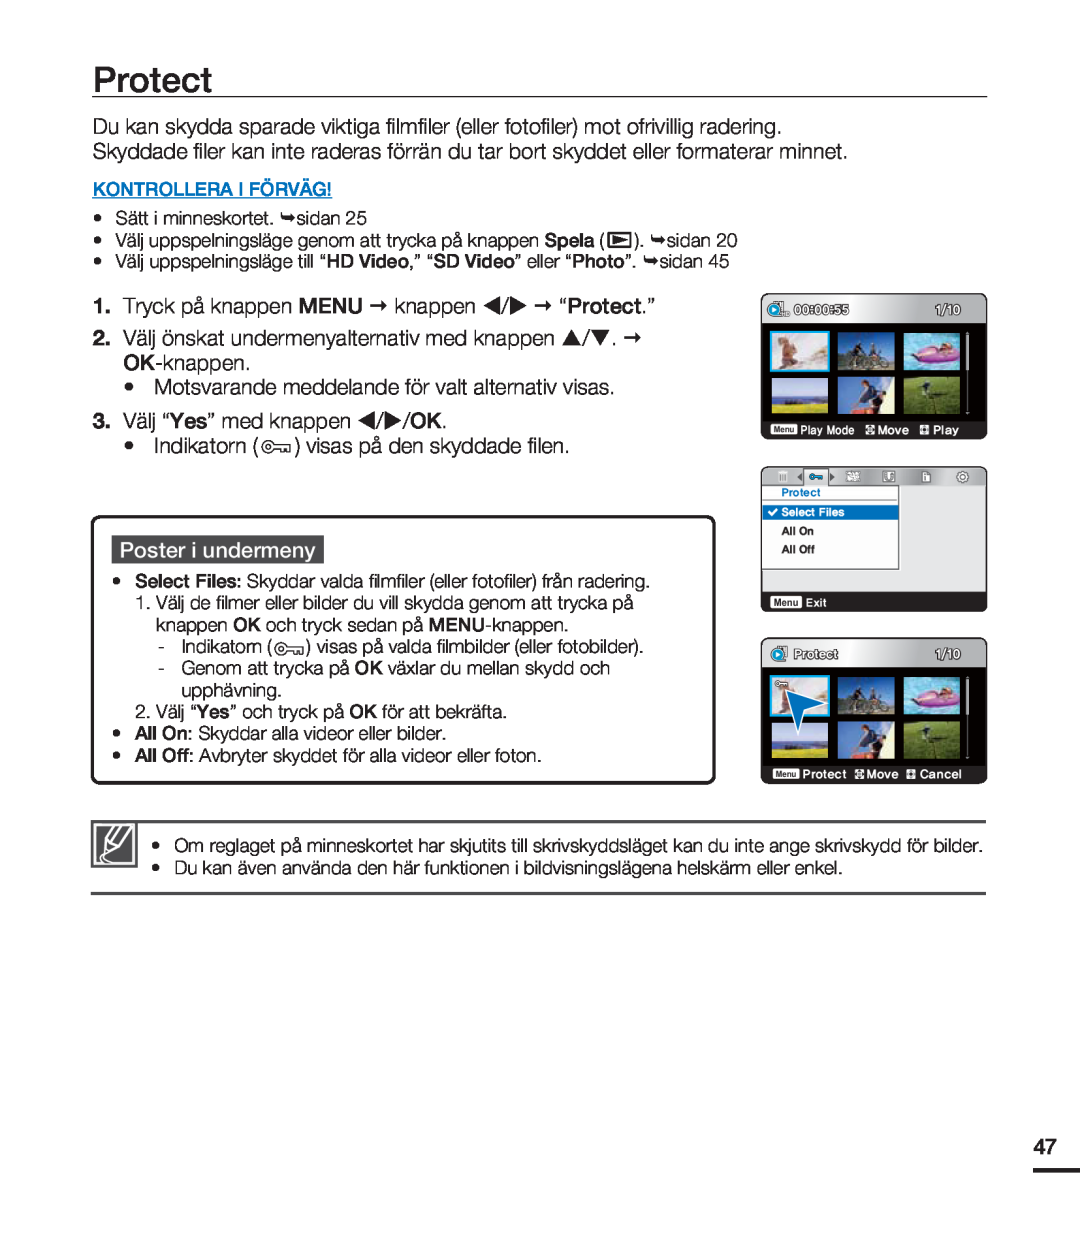 Samsung HMX-U20BP/EDC manual Protect, Poster i undermeny, Kontrollera I Förväg, MM0GG 